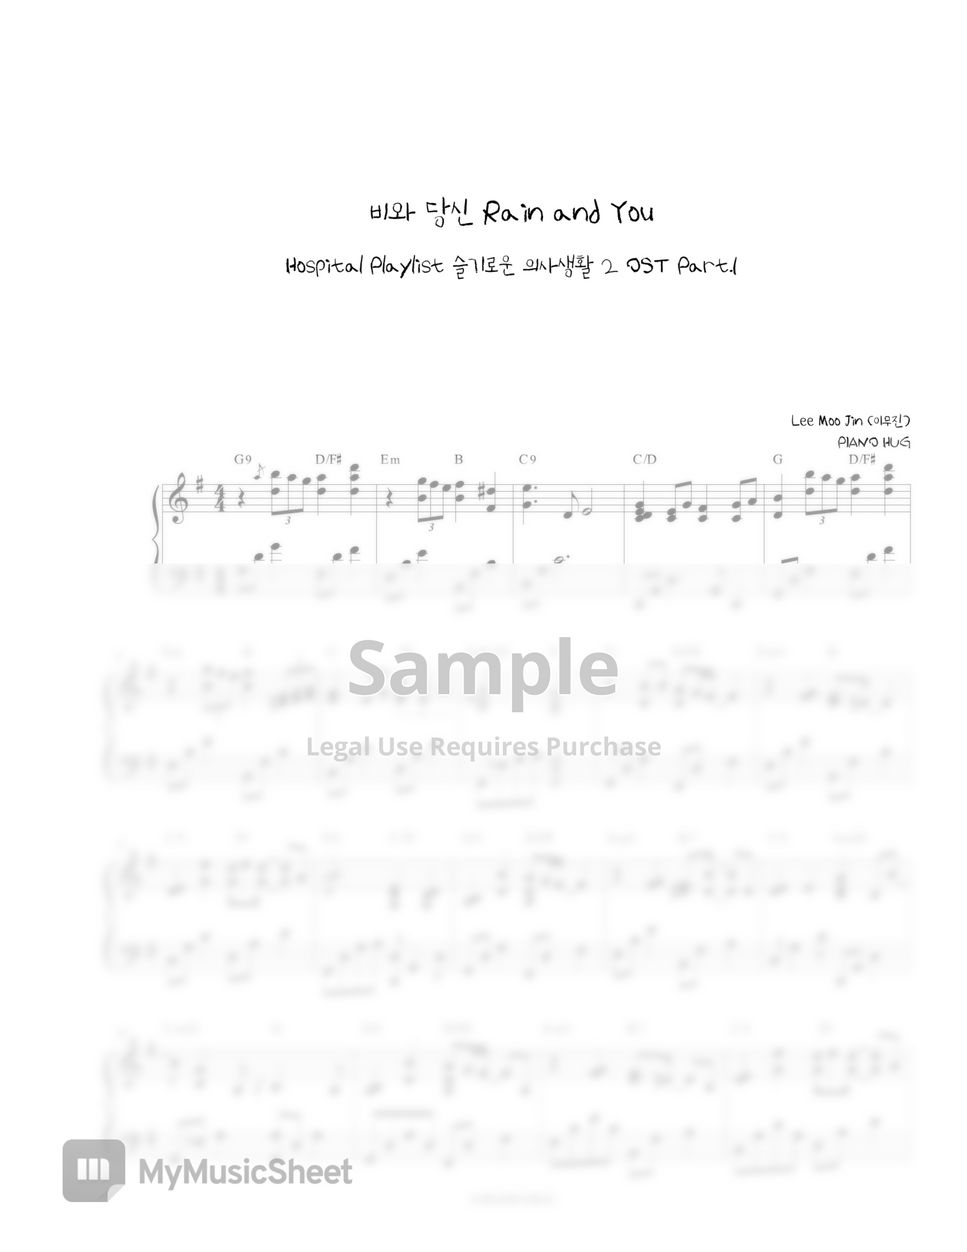 Lee MooJin - Rain and You (Hospital Playlist2 OST) by Piano Hug